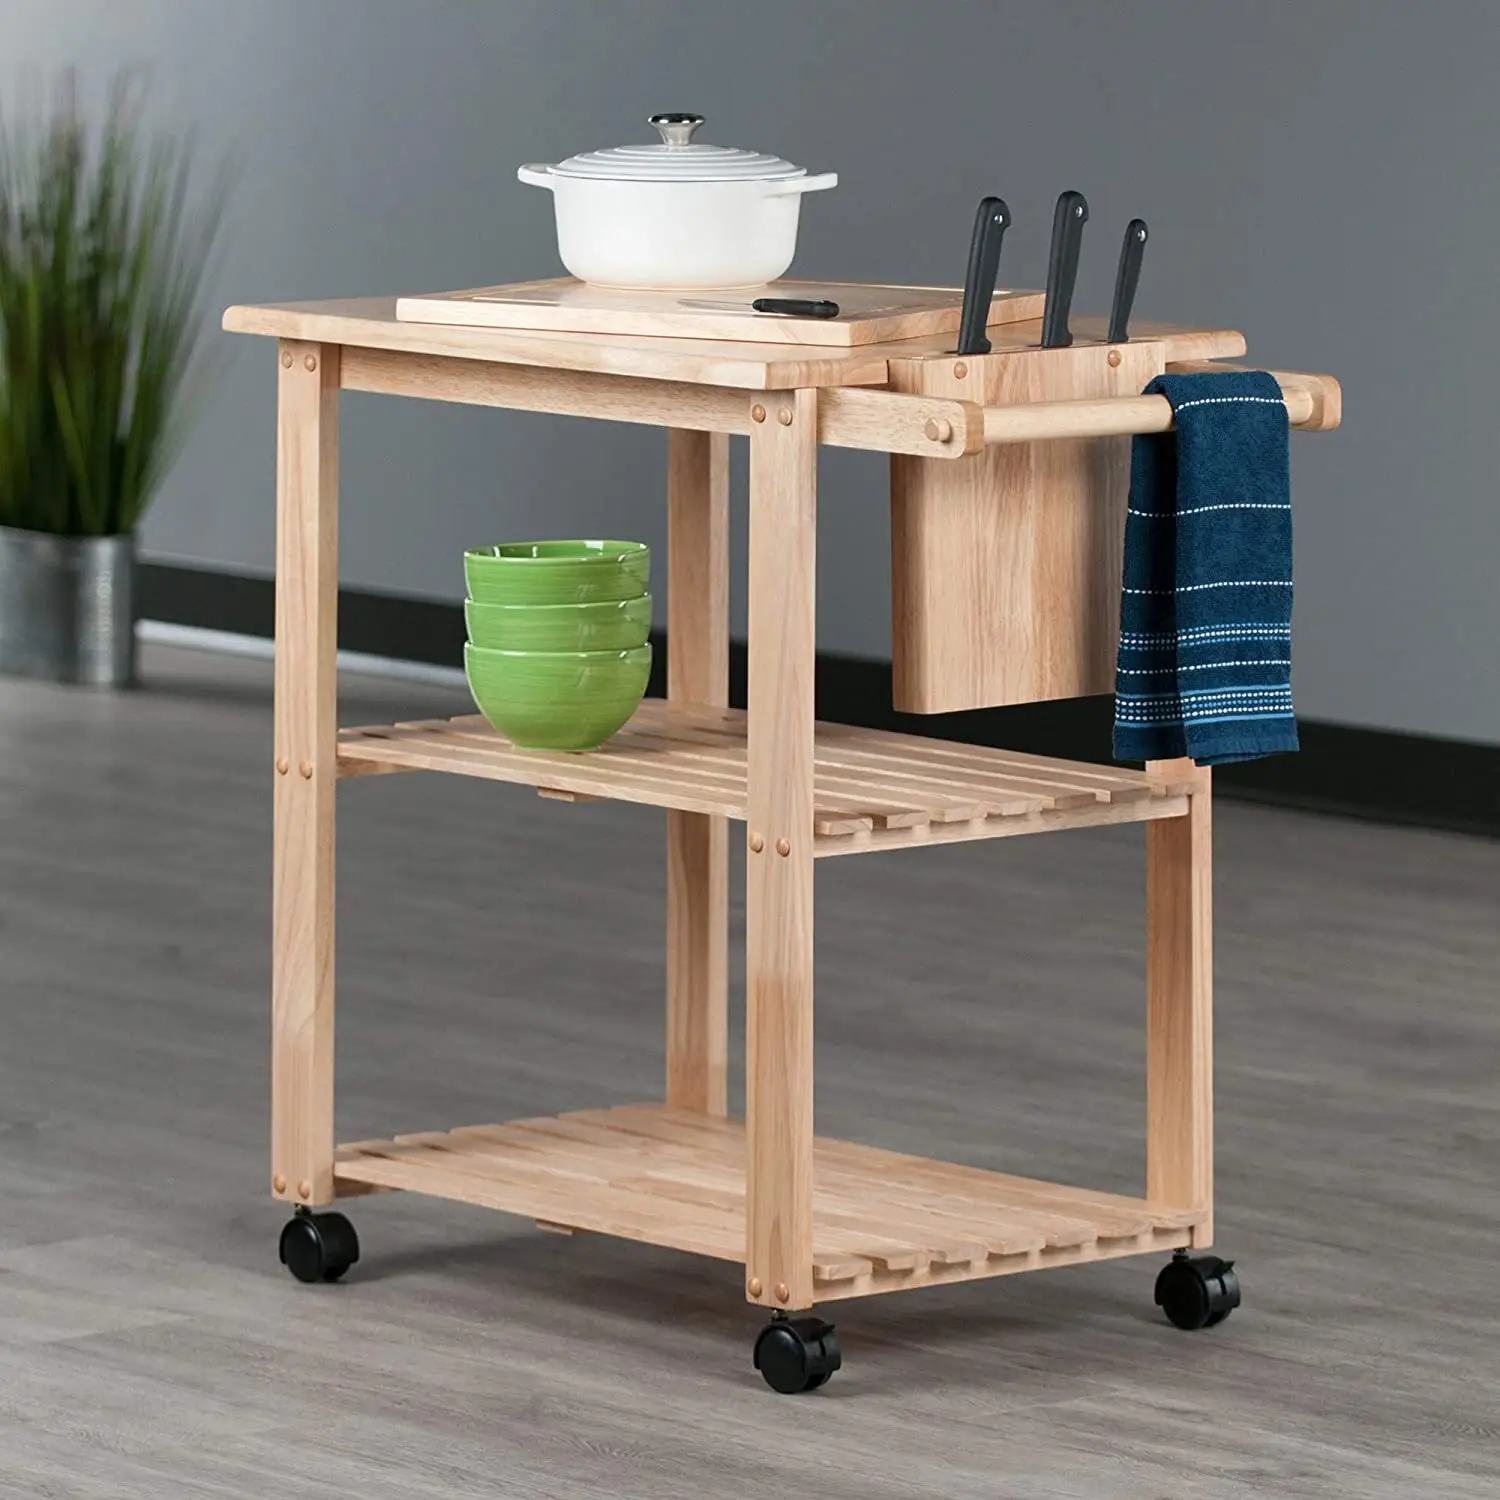 Chariot de stockage des aliments pour produits en bois chariots à plusieurs étages ajouter de l'espace chariot utilitaire dans la cuisine ou la salle à manger